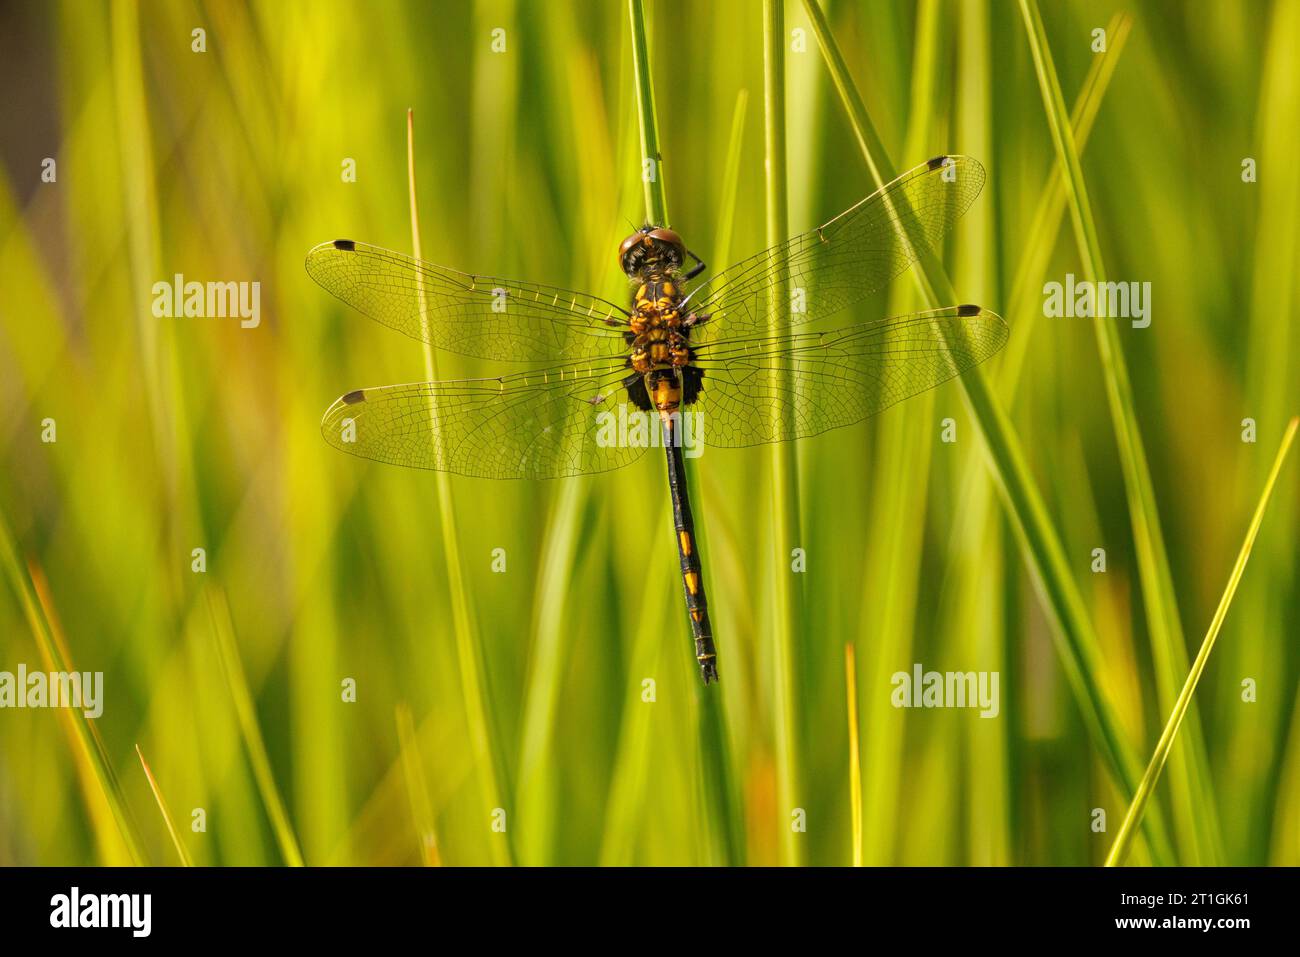 darter dalla faccia bianca, libellula dalla faccia bianca (Leucorrhinia dubia, Leucorhinia dubia), femmina seduta su una lama d'erba, Germania, Baviera, Grundloser Foto Stock